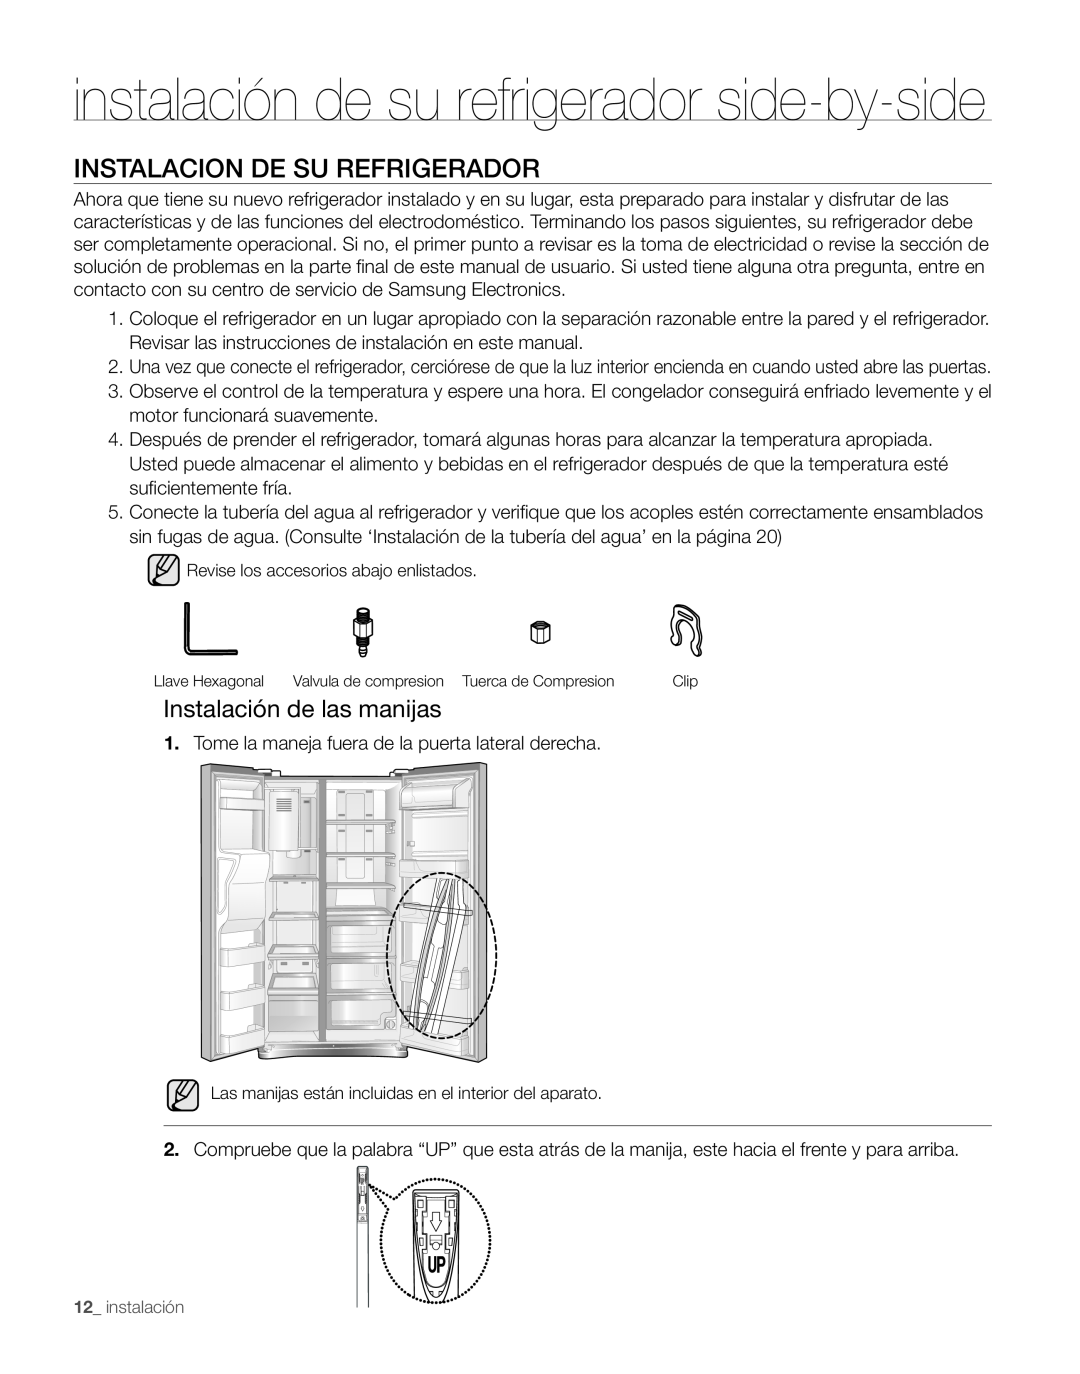 Samsung RS263TDWP Instalacion De Su Refrigerador, Instalación de las manijas, instalación de su refrigerador side-by-side 